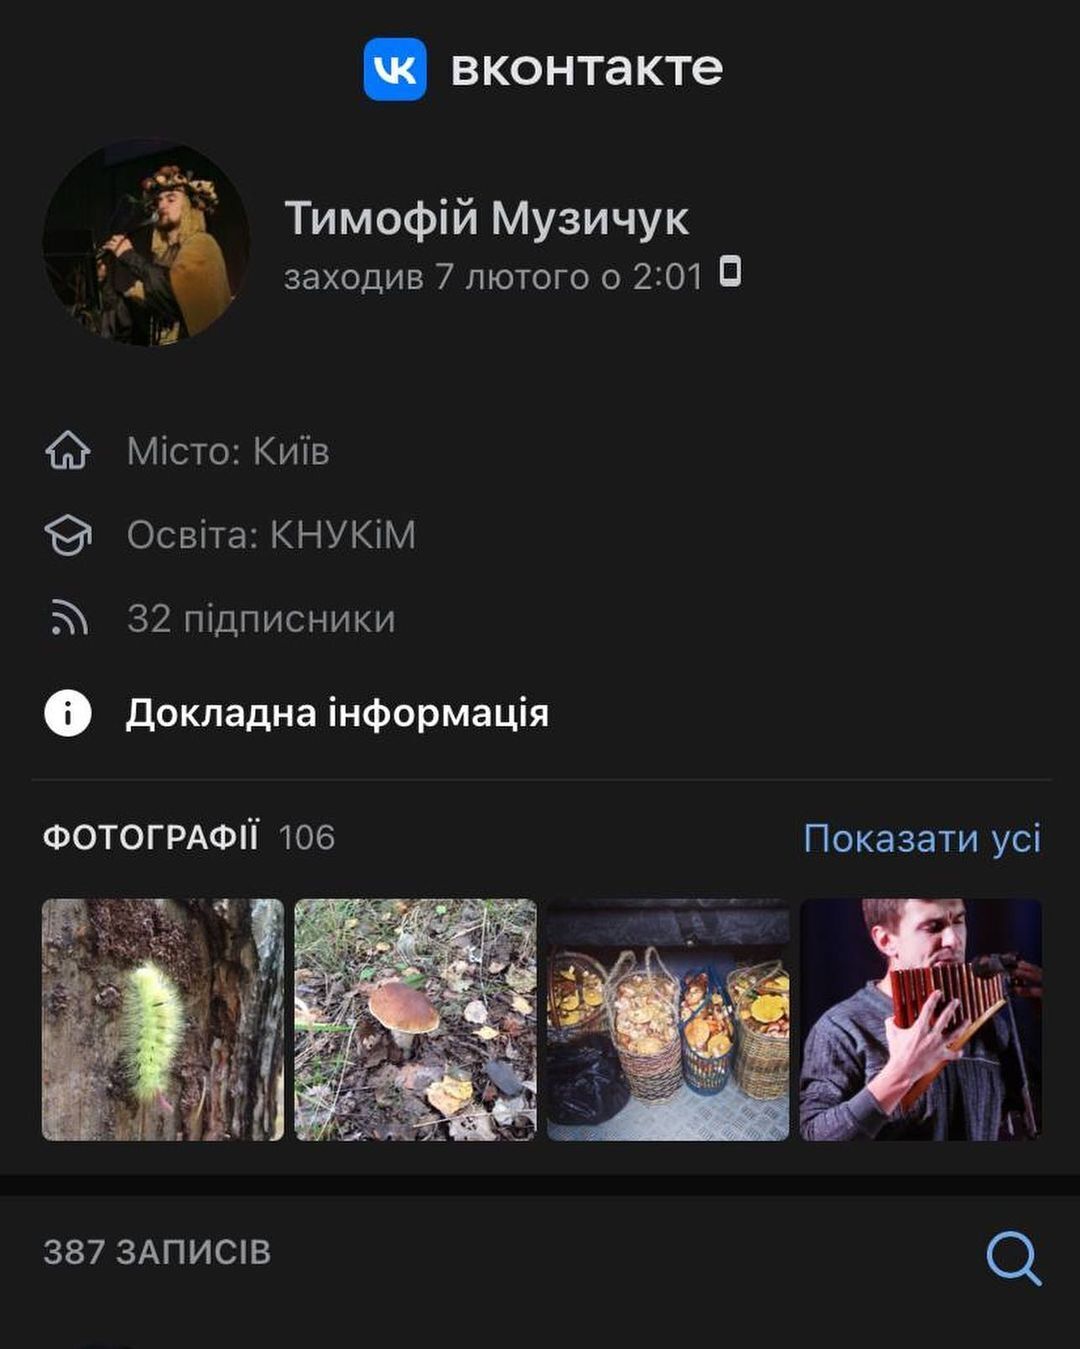 Страница музыканта в российской соцсети